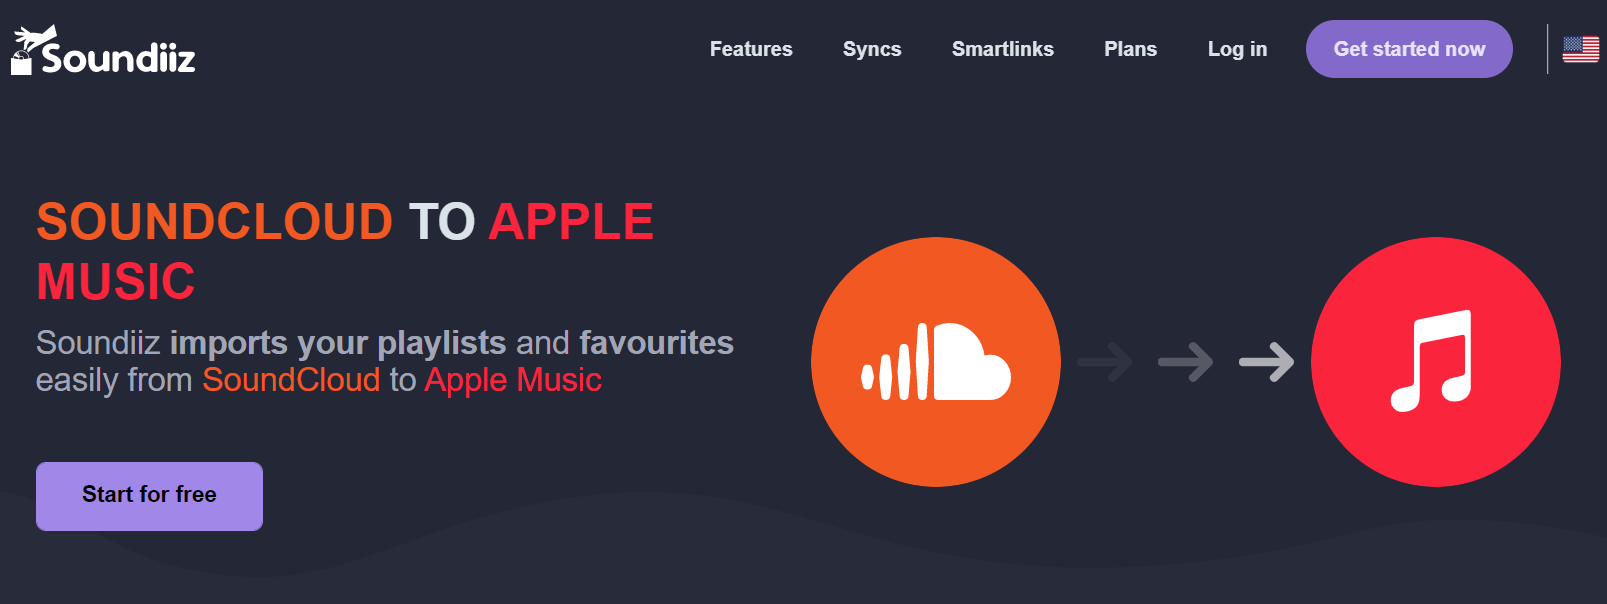 Soundiiz Soundcloud su Apple Music